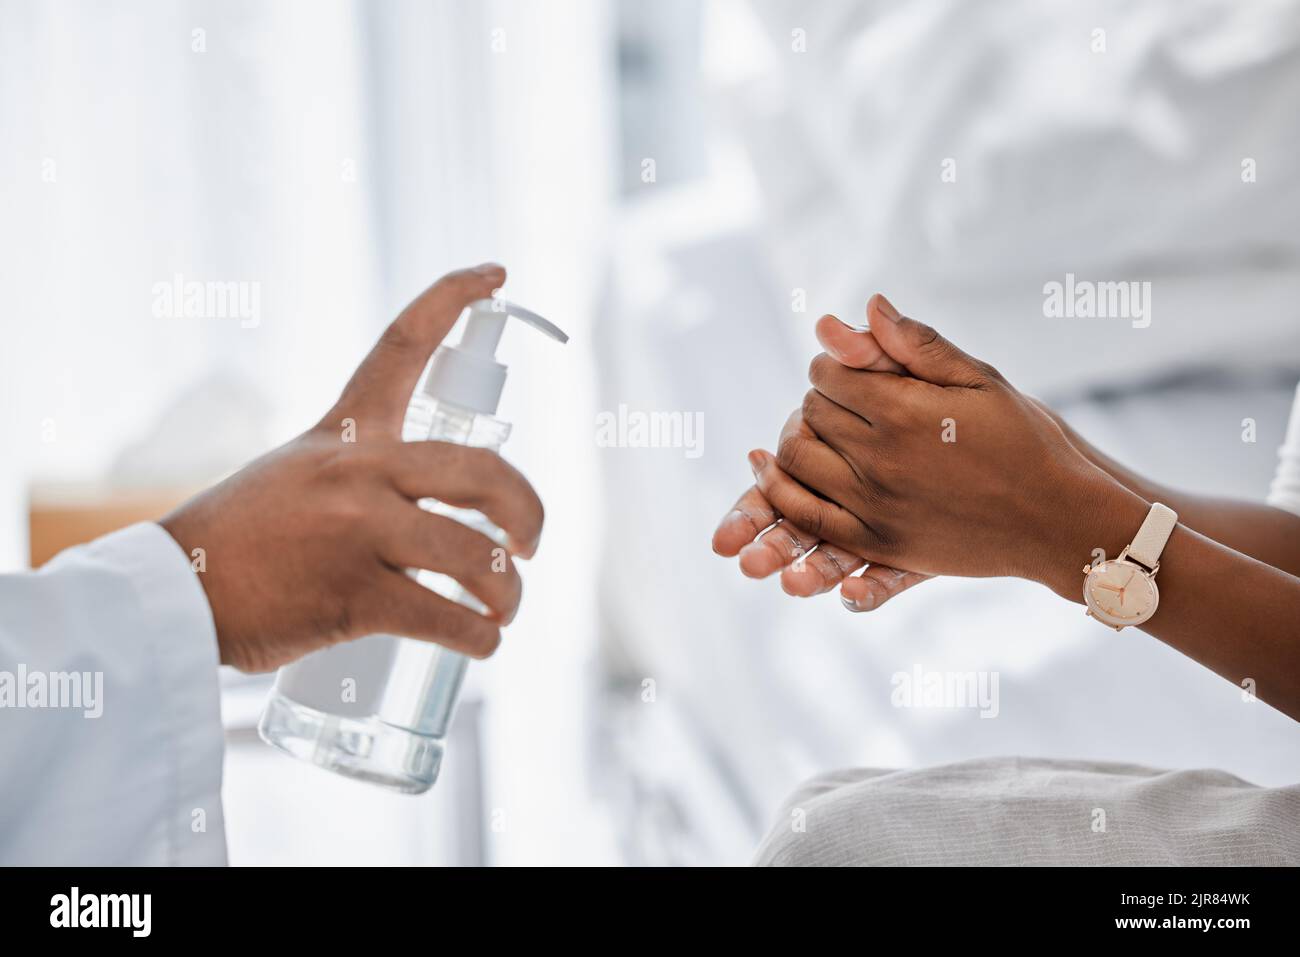 Médecin donnant au patient un désinfectant pour les mains pour la protection contre les covidés, l'hygiène et le protocole dans l'hôpital ou la clinique. La sécurité des soins de santé, les germes de la grippe et le nettoyage des mains Banque D'Images